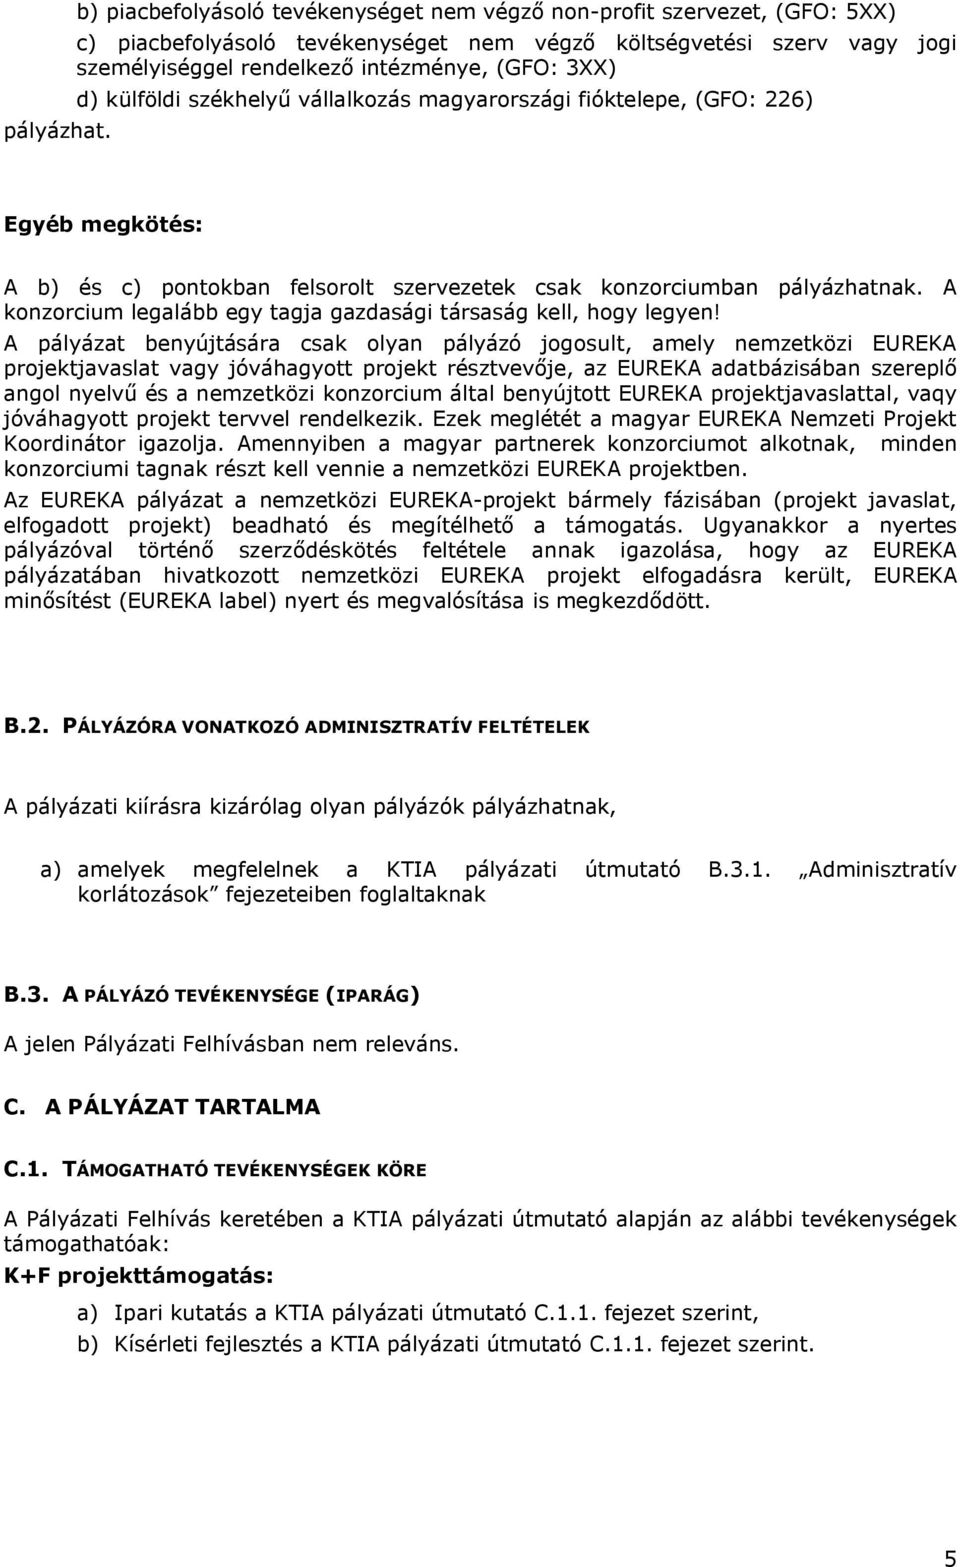 d) külföldi székhelyű vállalkozás magyarországi fióktelepe, (GFO: 226) Egyéb megkötés: A b) és c) pontokban felsorolt szervezetek csak konzorciumban pályázhatnak.